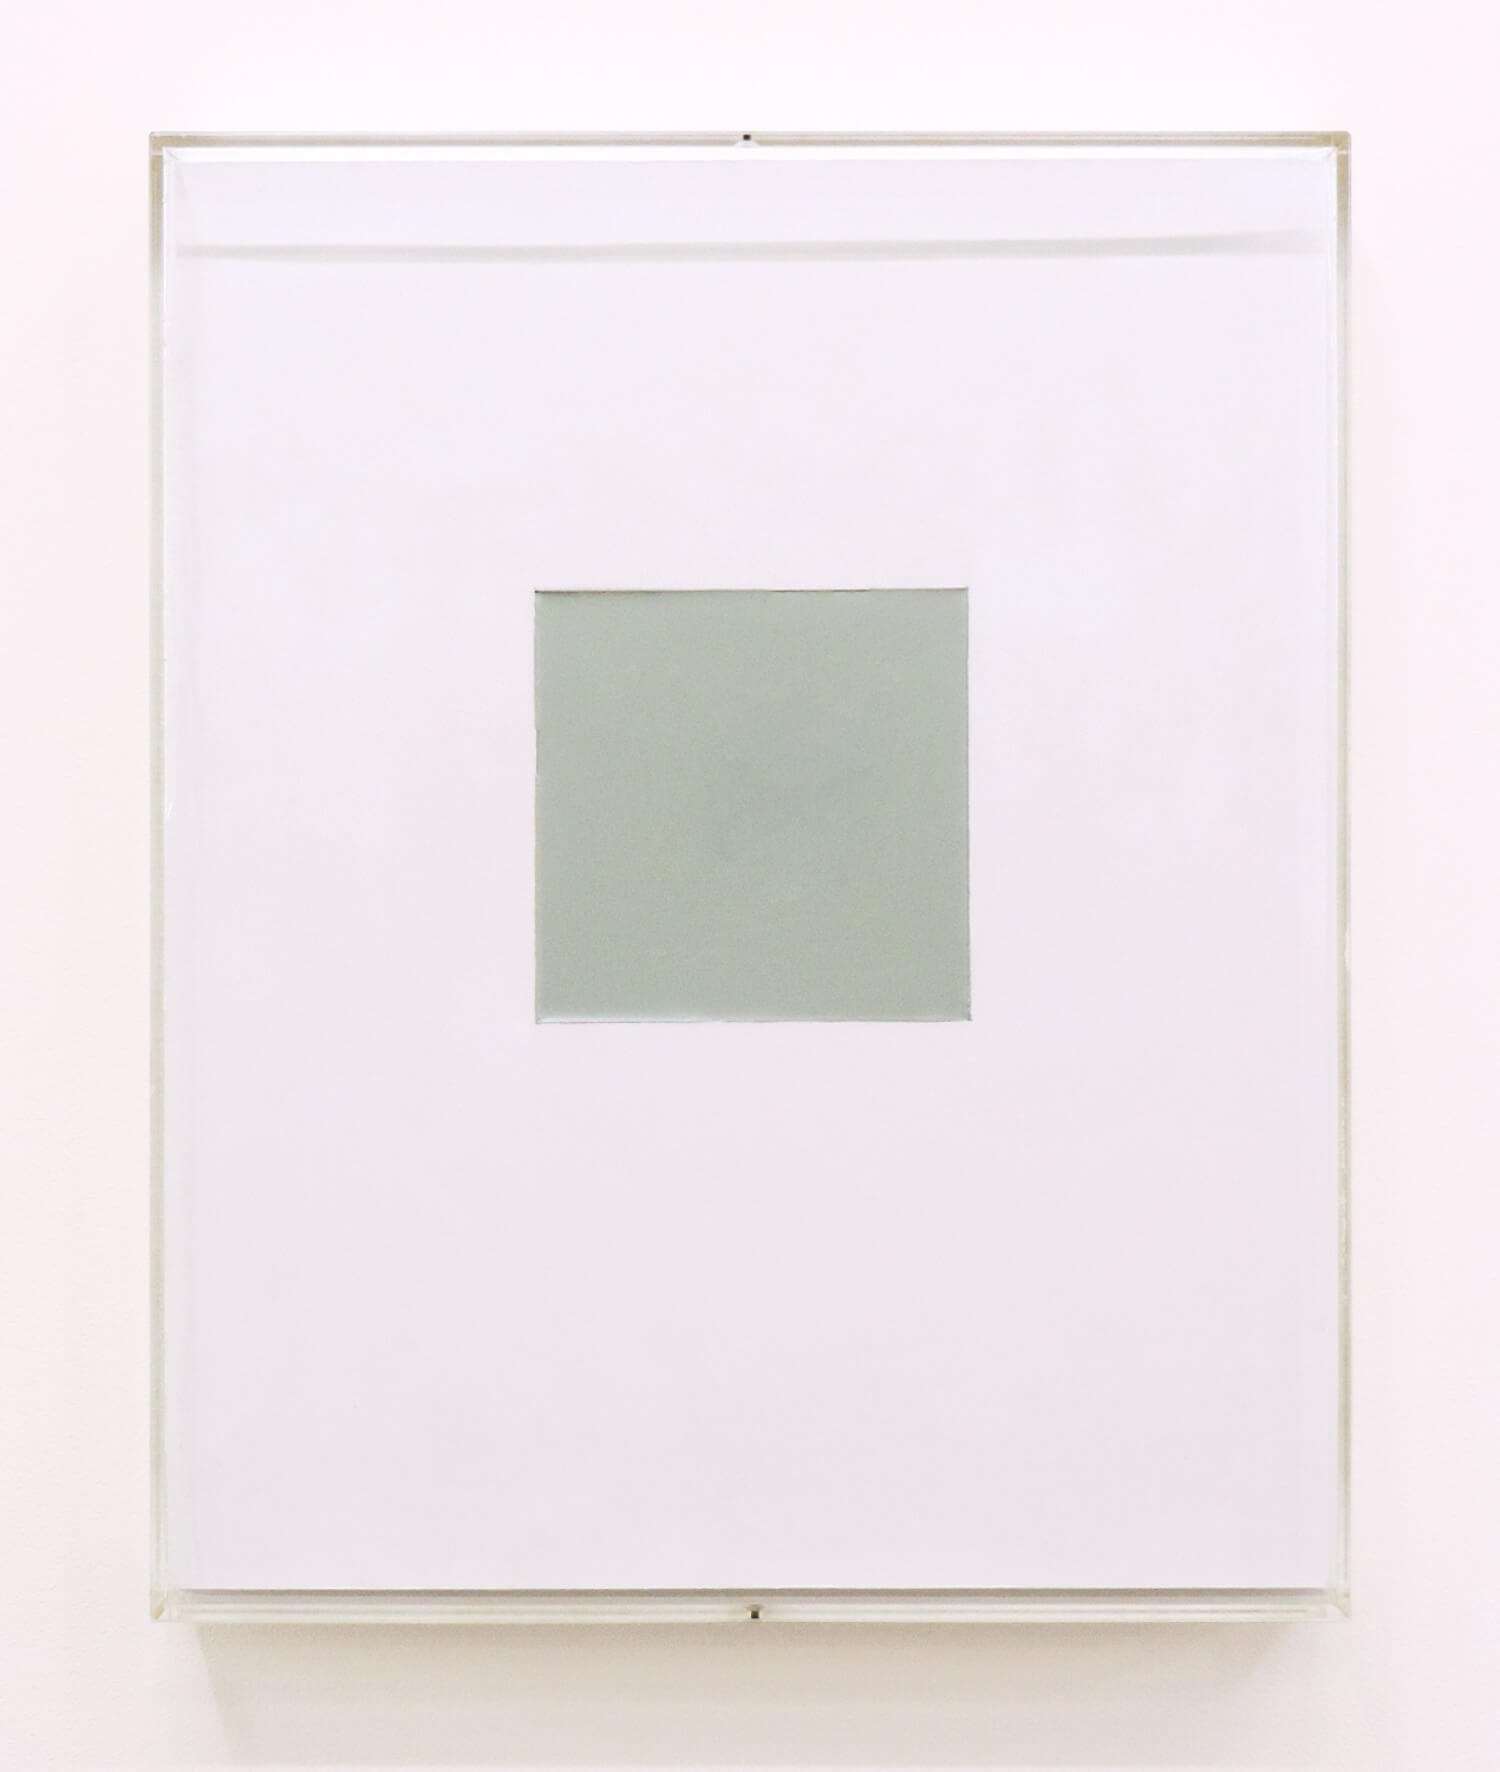 鈴木たかし<br>P0205 / acrylic on paper, 27 x 21 cm, 2002